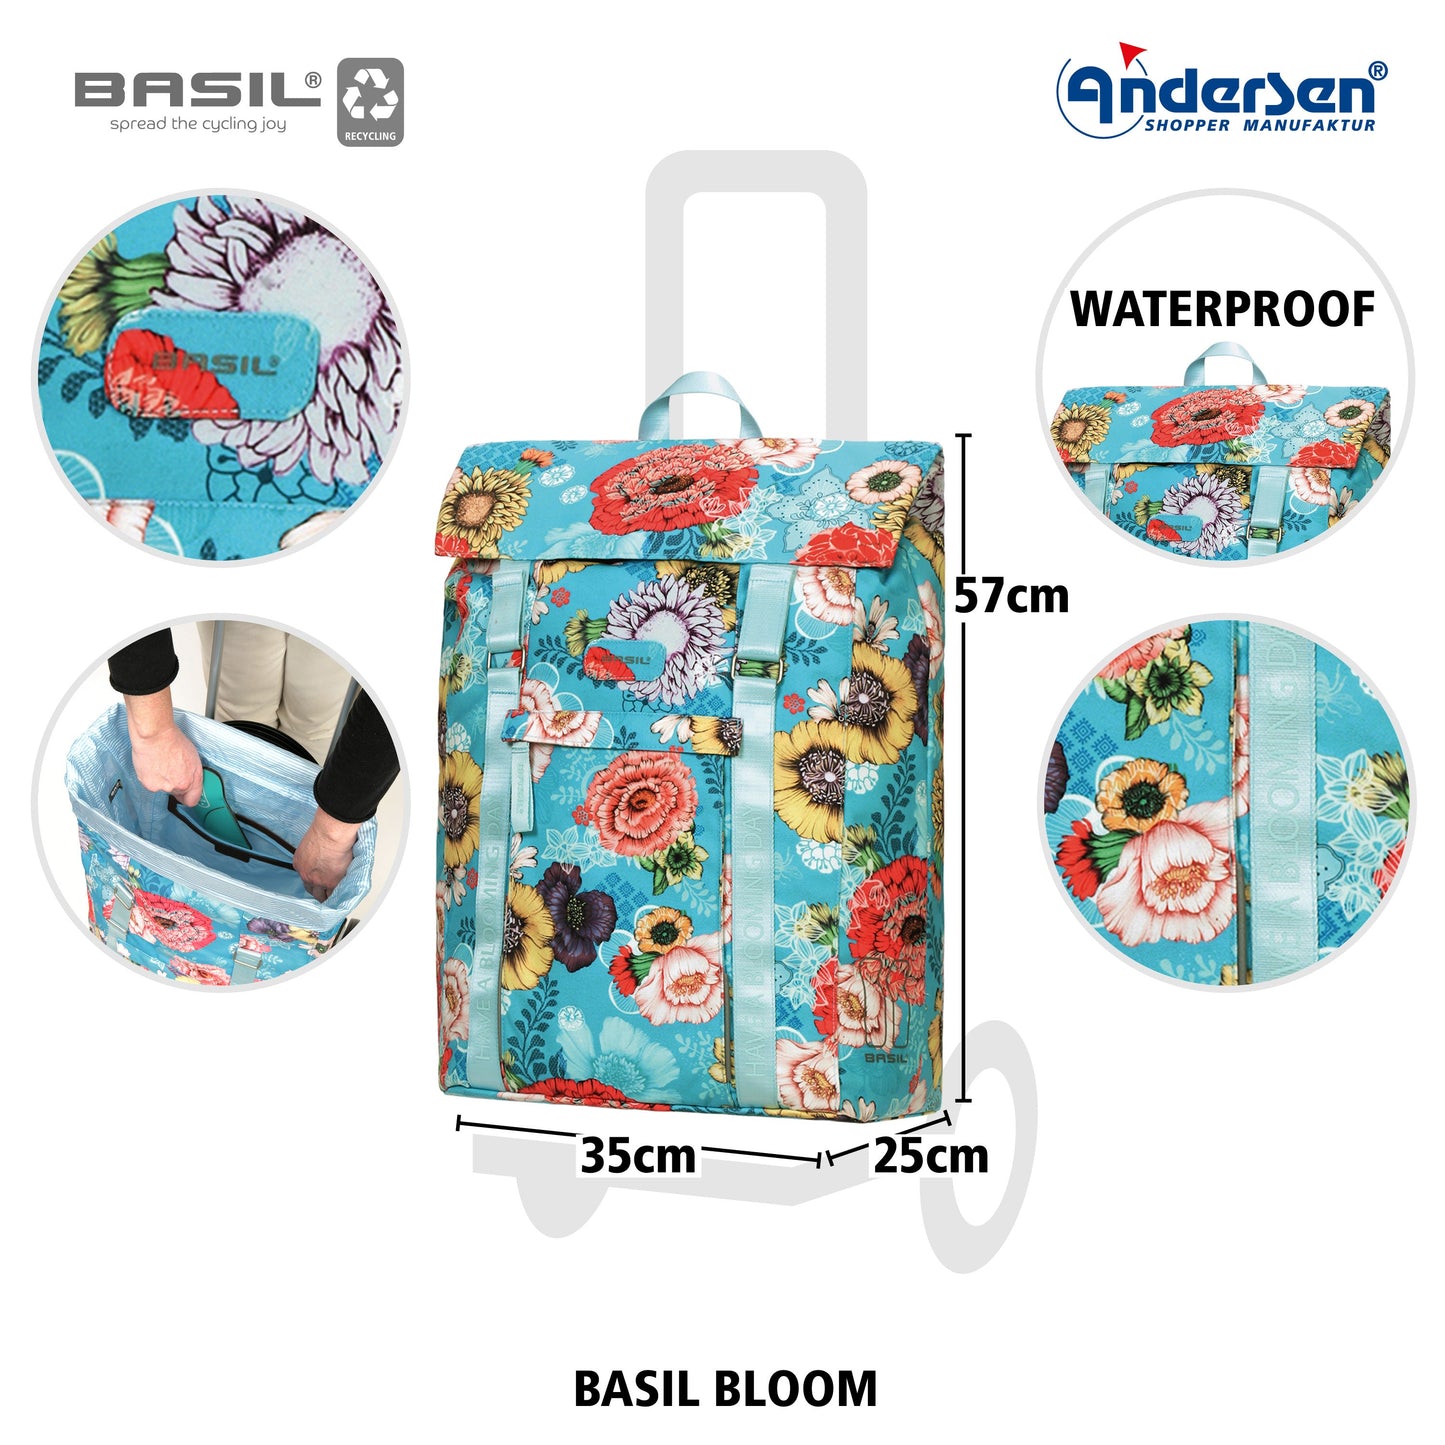 Andersen Shopper Manufaktur-Basil Bloom blau-www.shopping-trolley.ch-bild2